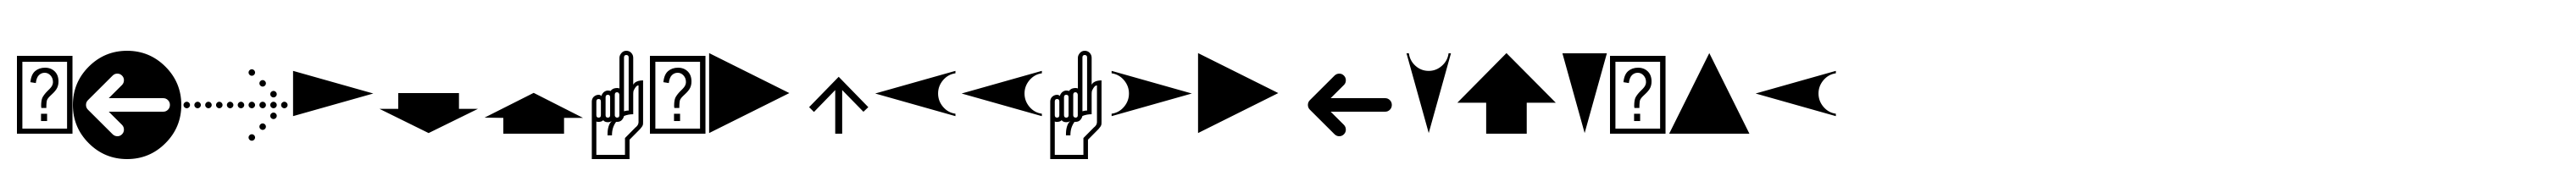 PIXymbols Arrows Regular